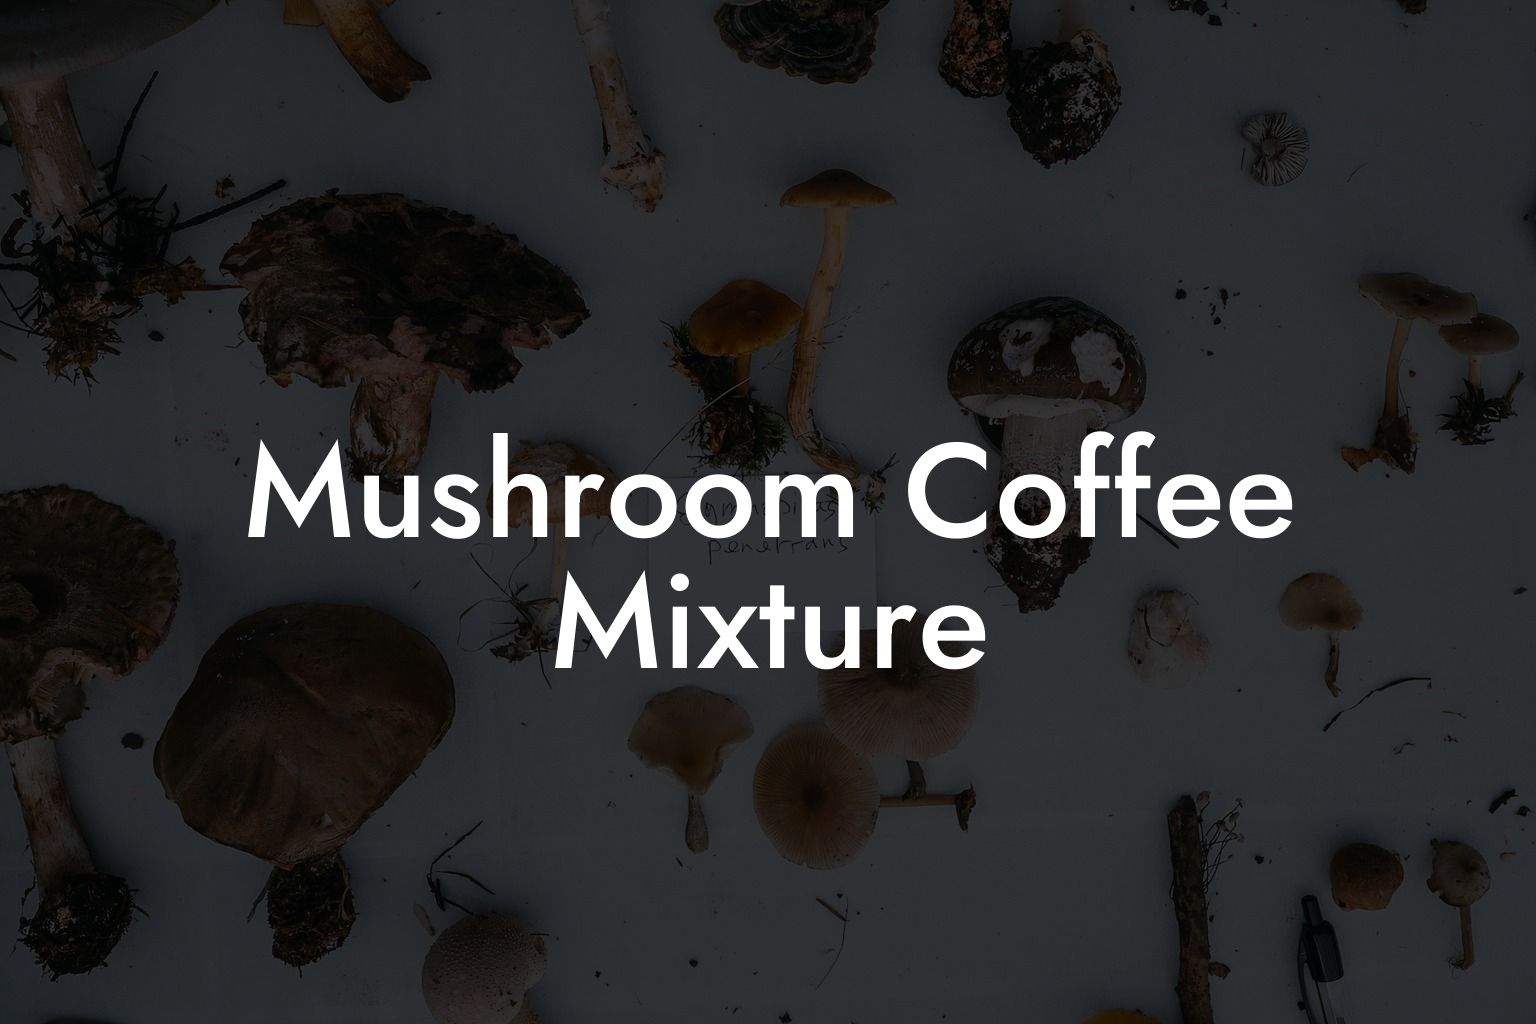 Mushroom Coffee Mixture